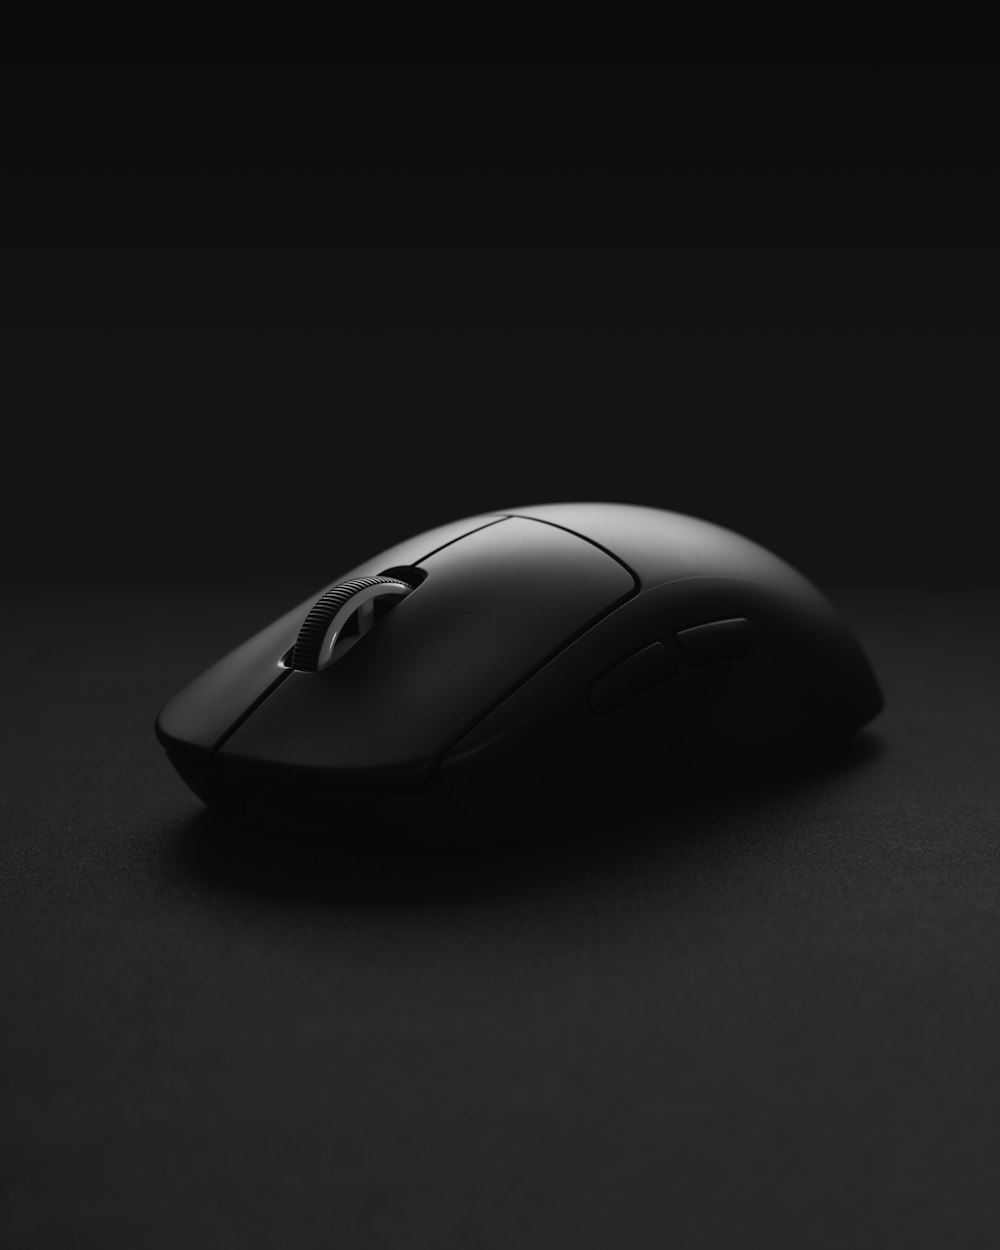 검은색 표면에 검은색 무선 컴퓨터 마우스